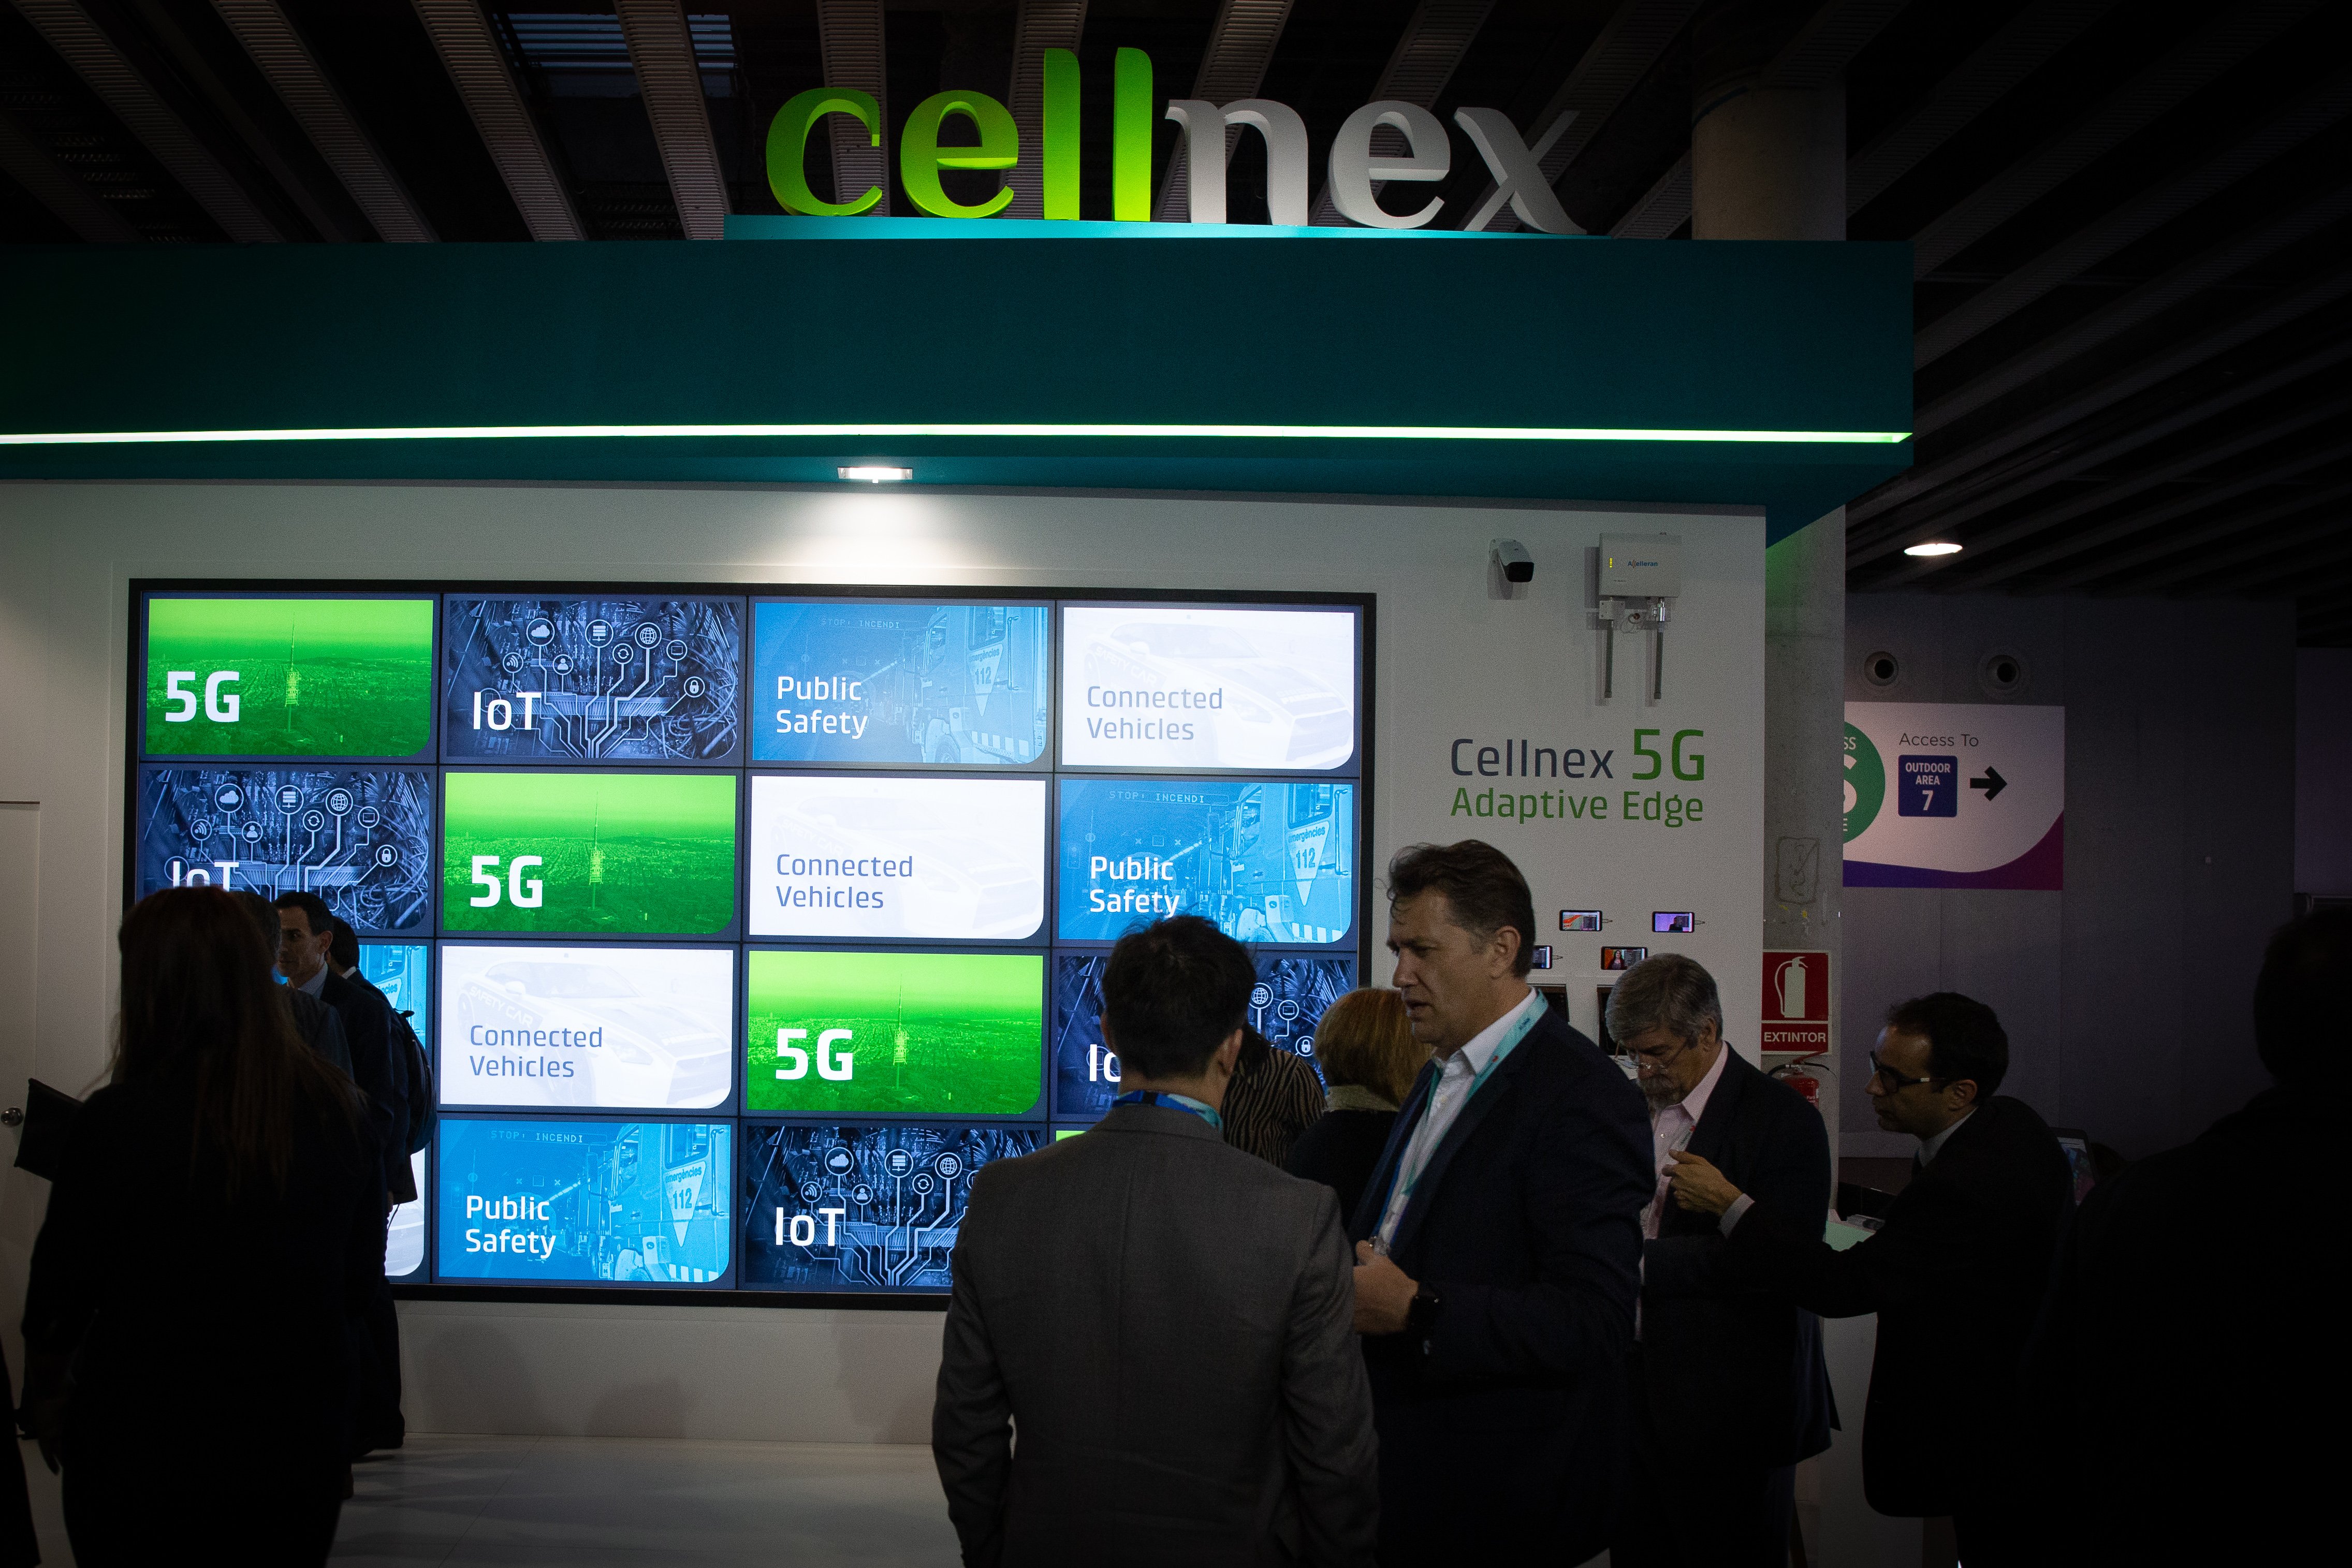 Estand de 'Cellnex' promocionanado la tecnología 5G en el recinto ferial del Mobile World Congress de Barcelona. Foto: Europa Press